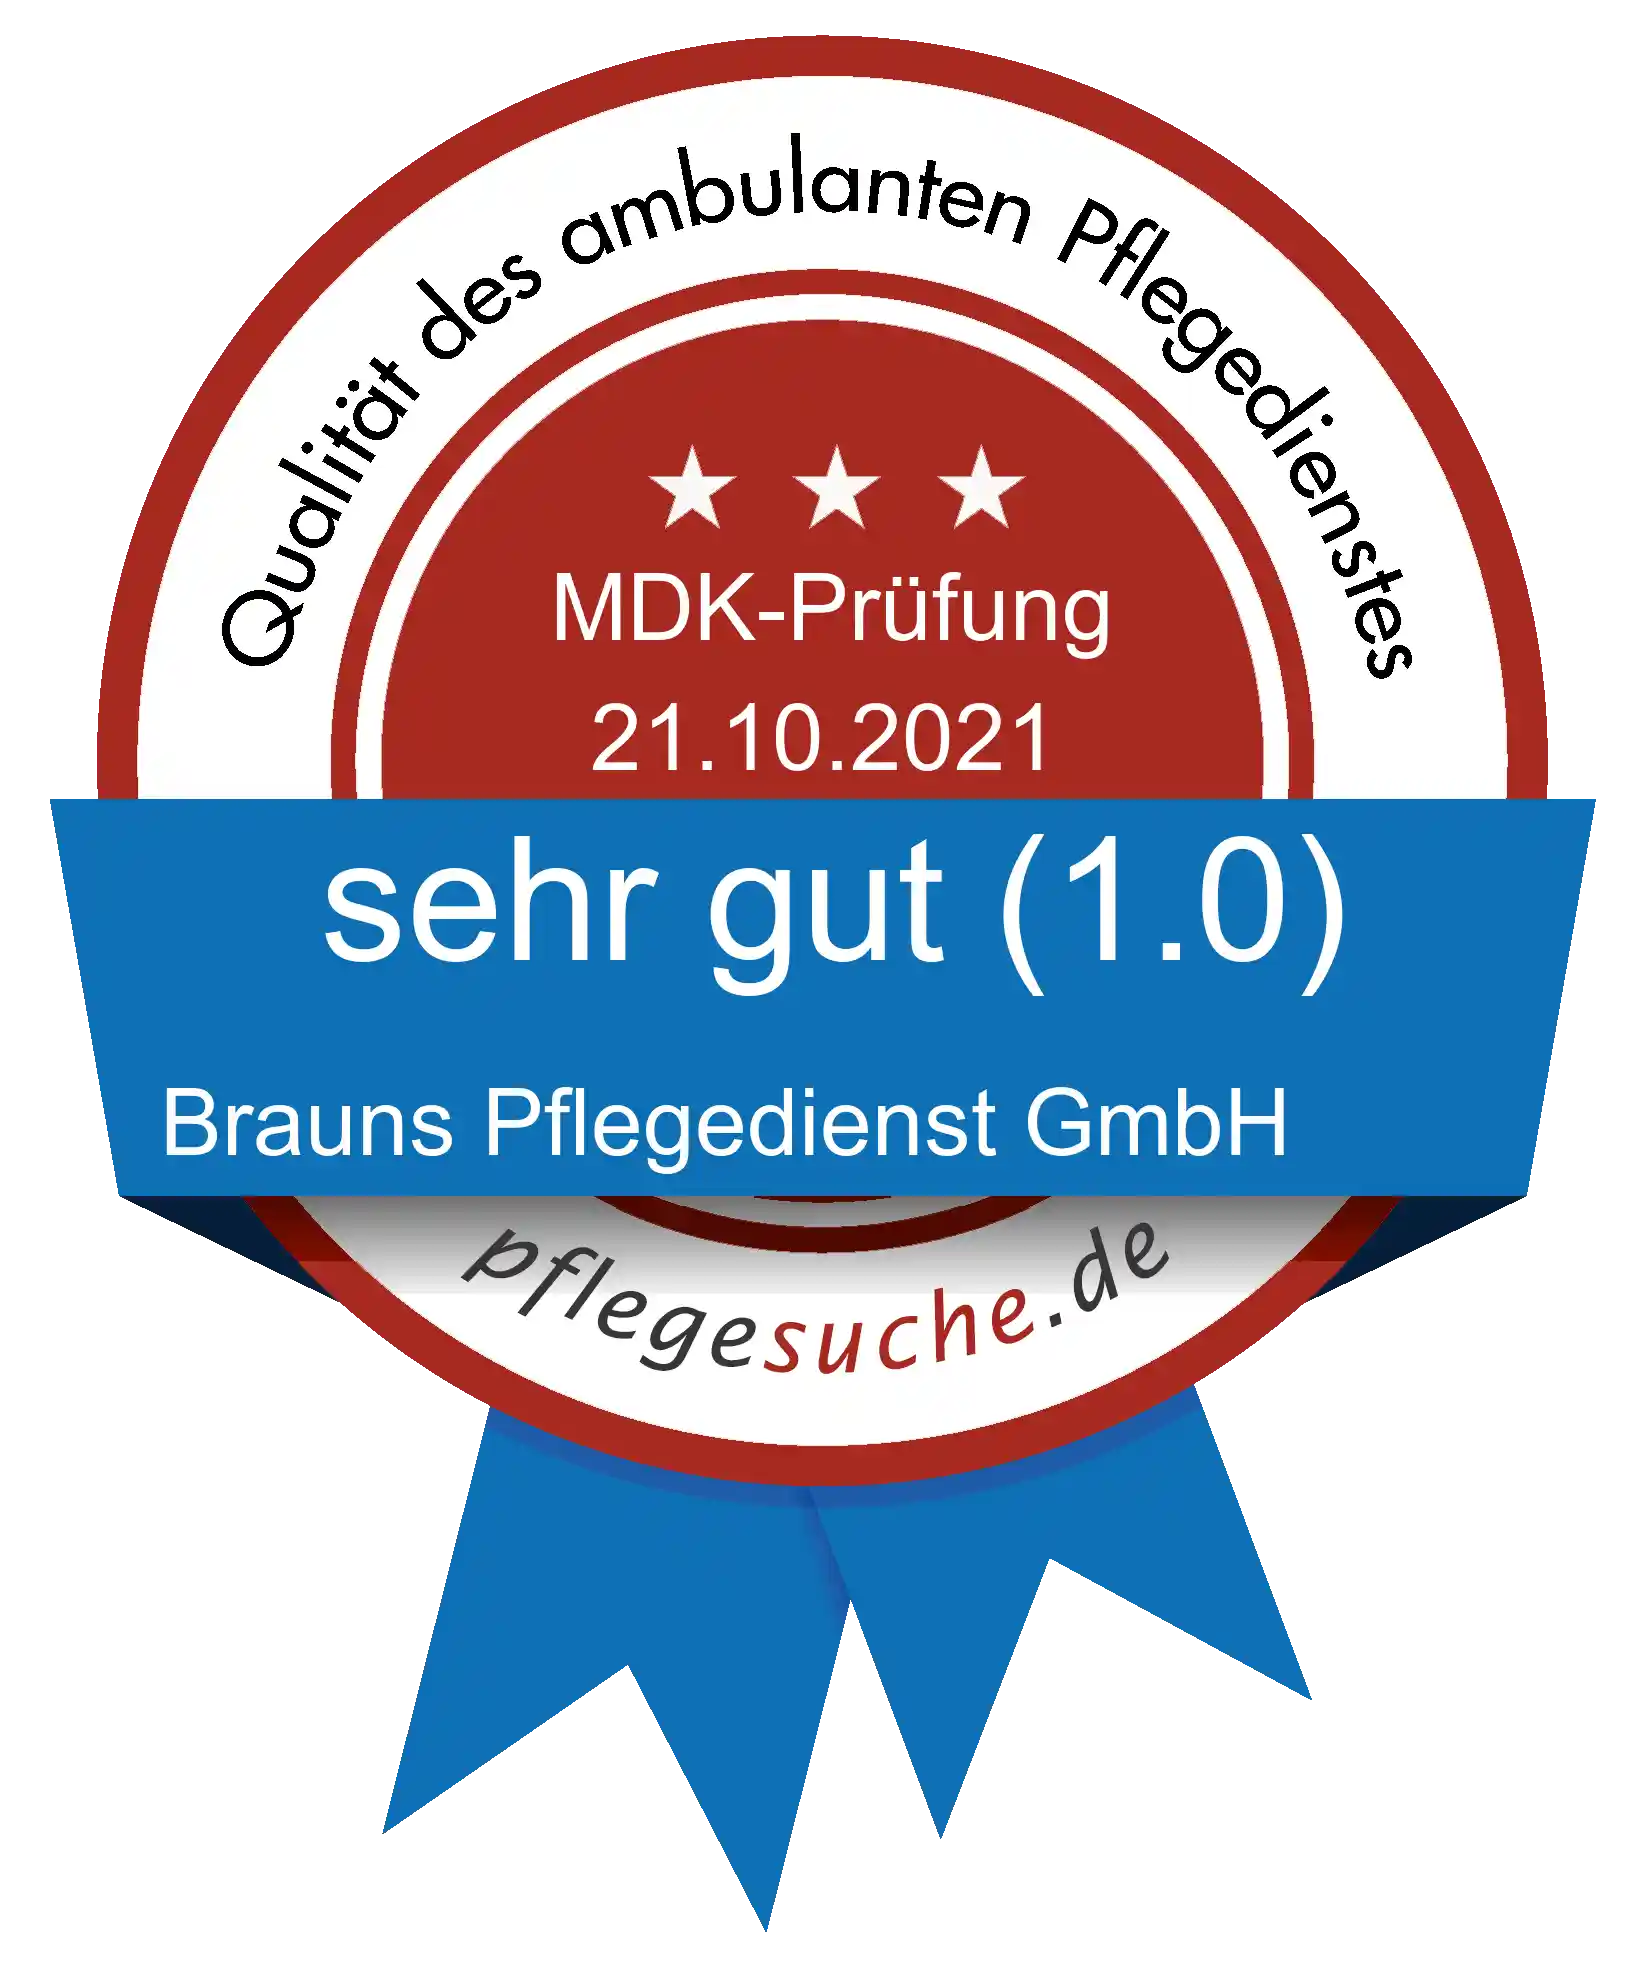 Siegel Benotung: Brauns Pflegedienst GmbH